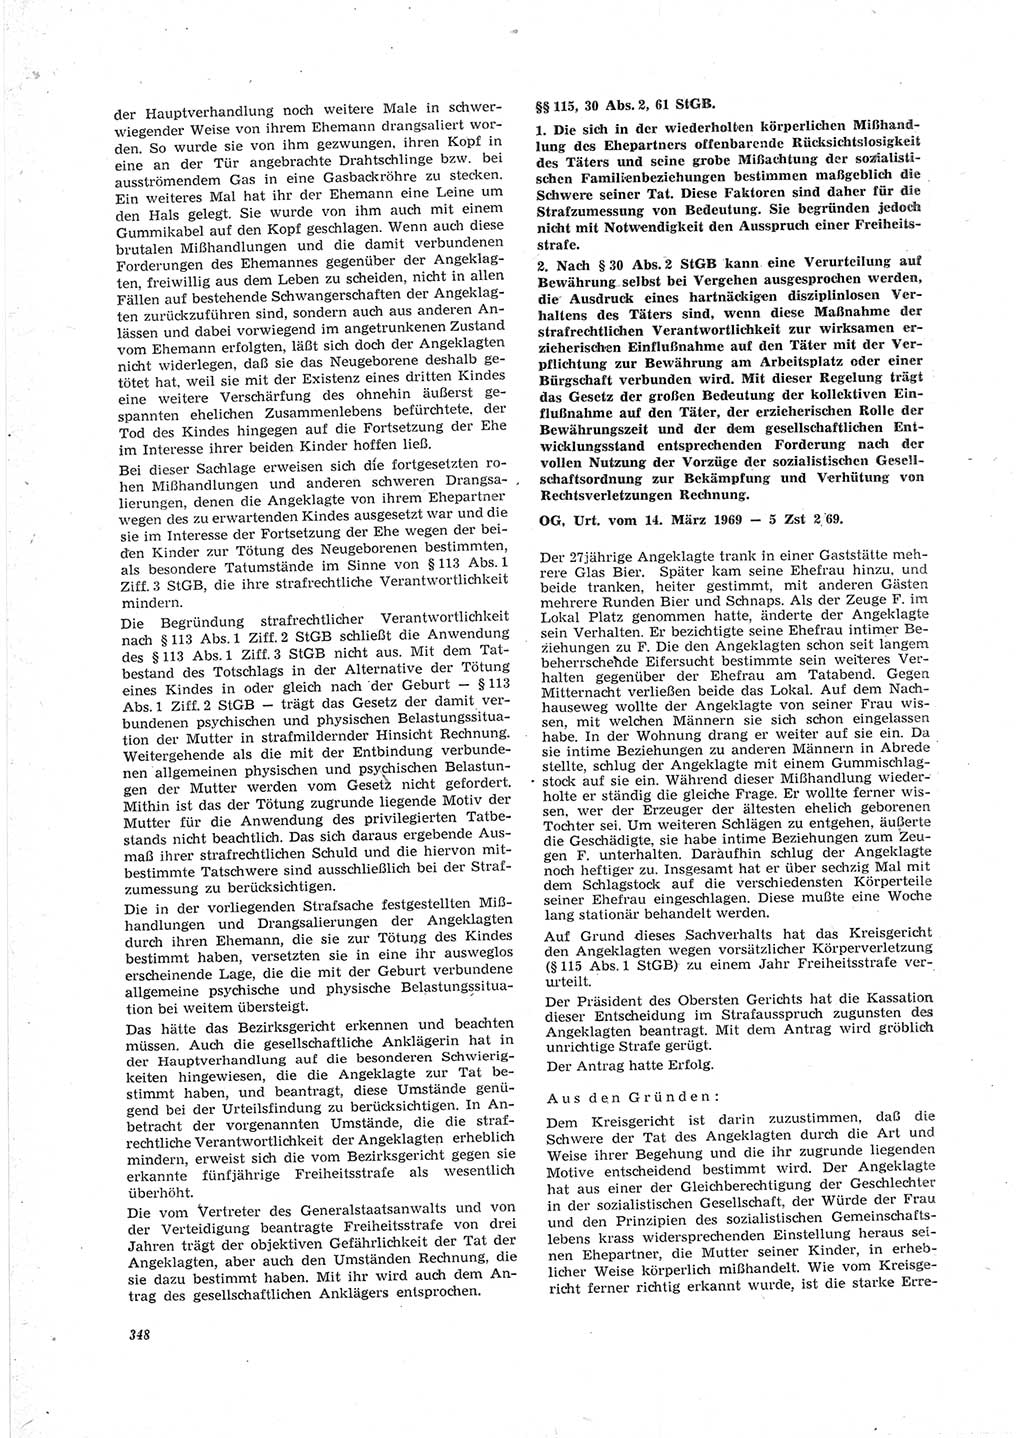 Neue Justiz (NJ), Zeitschrift für Recht und Rechtswissenschaft [Deutsche Demokratische Republik (DDR)], 23. Jahrgang 1969, Seite 348 (NJ DDR 1969, S. 348)